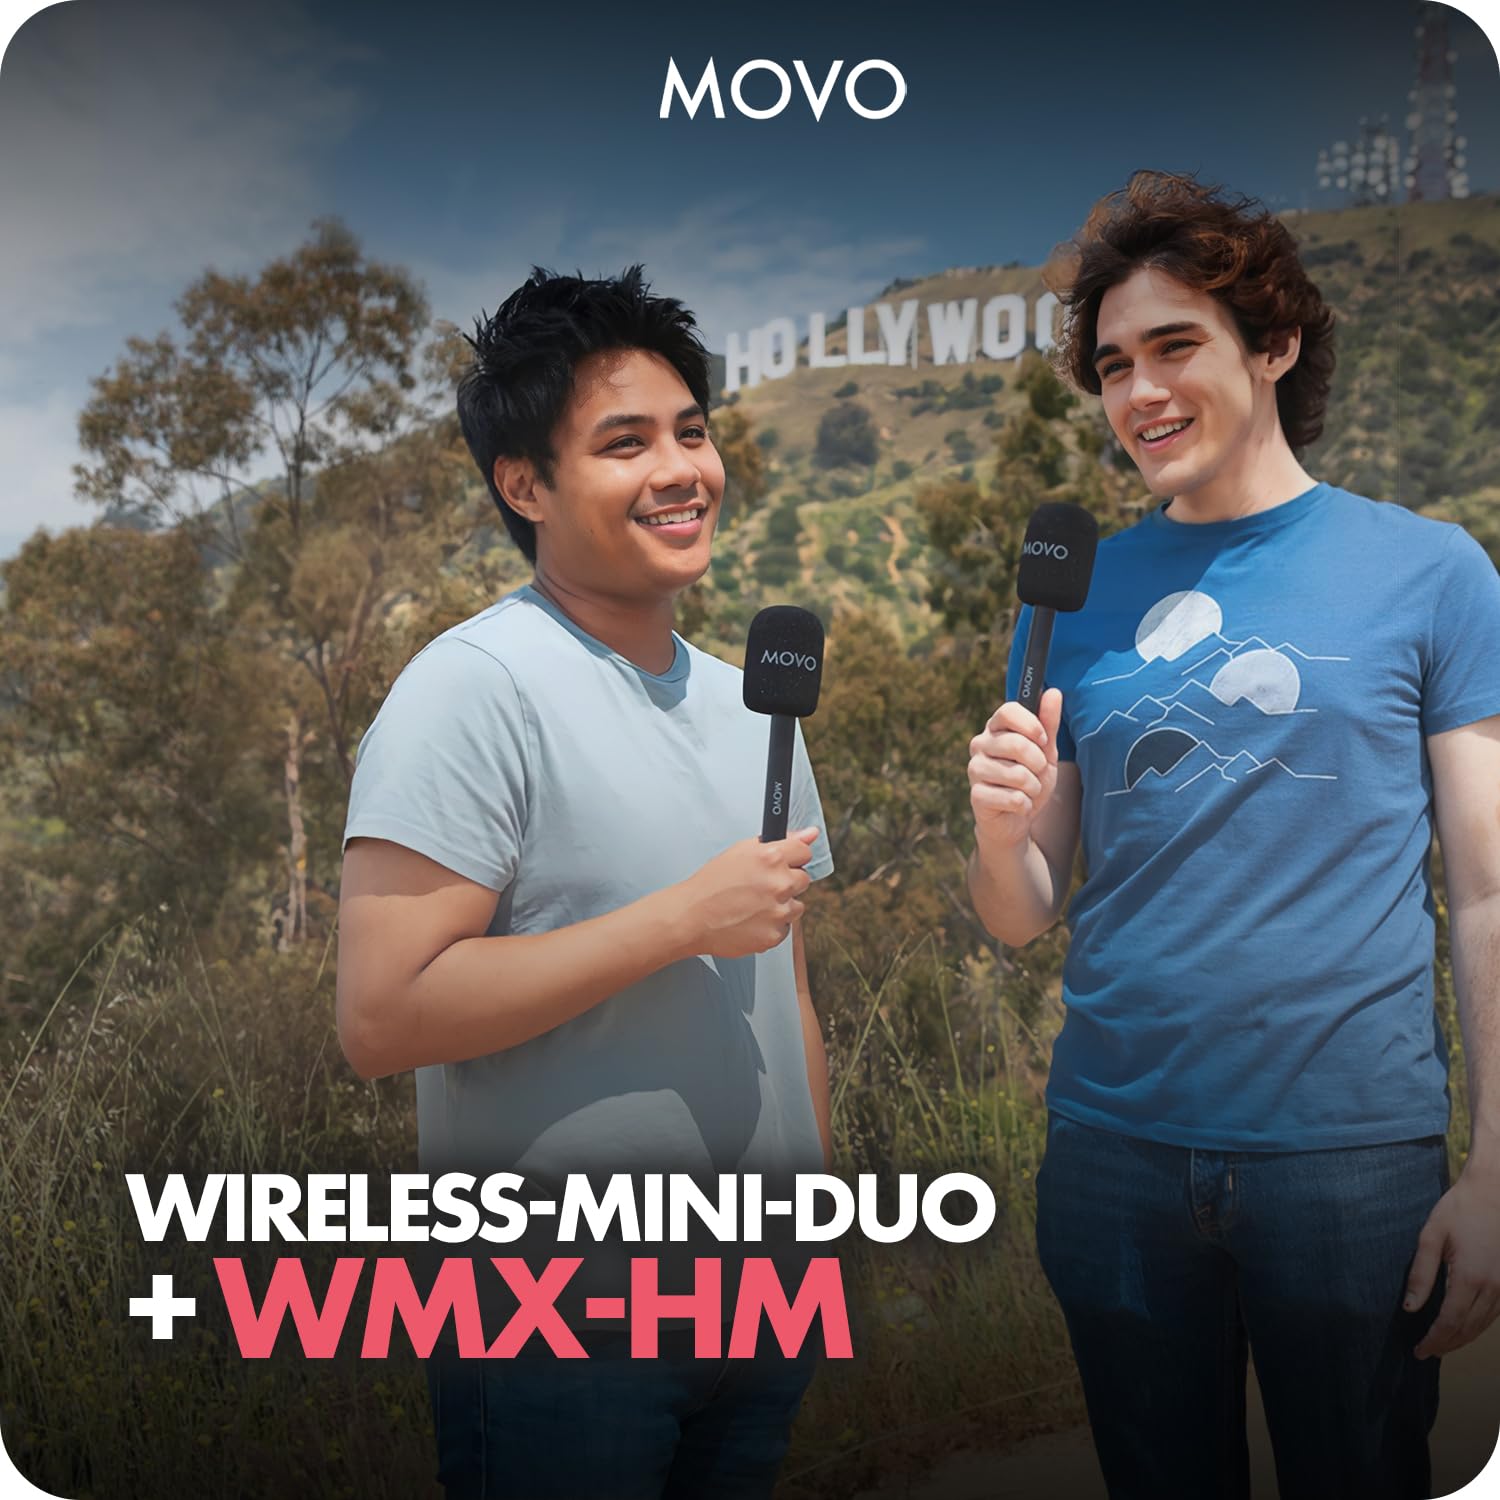 Movo Wireless-Mini-DUO+WMX-HMx2 Microphone System with 1-Year Warranty  - Like New